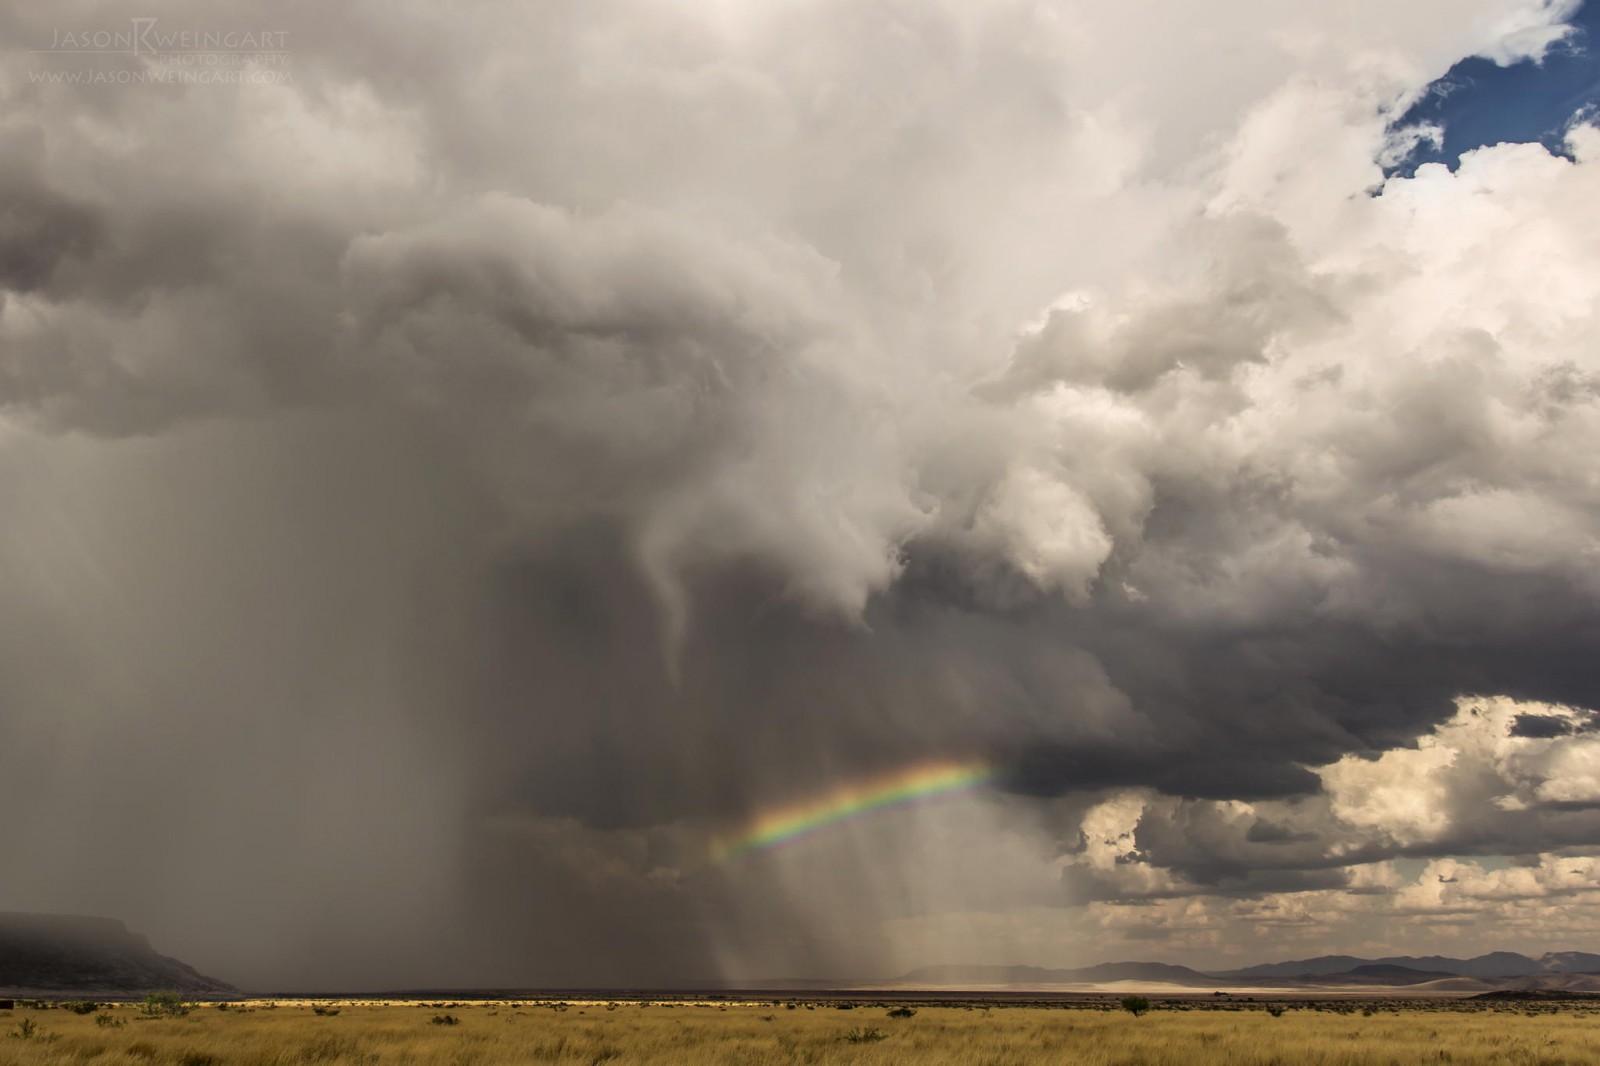 20 Εκπληκτικές φωτογραφίες από τον μεγαλύτερο κυνηγό καταιγίδων. Εντυπωσιακές. - Εικόνα 16